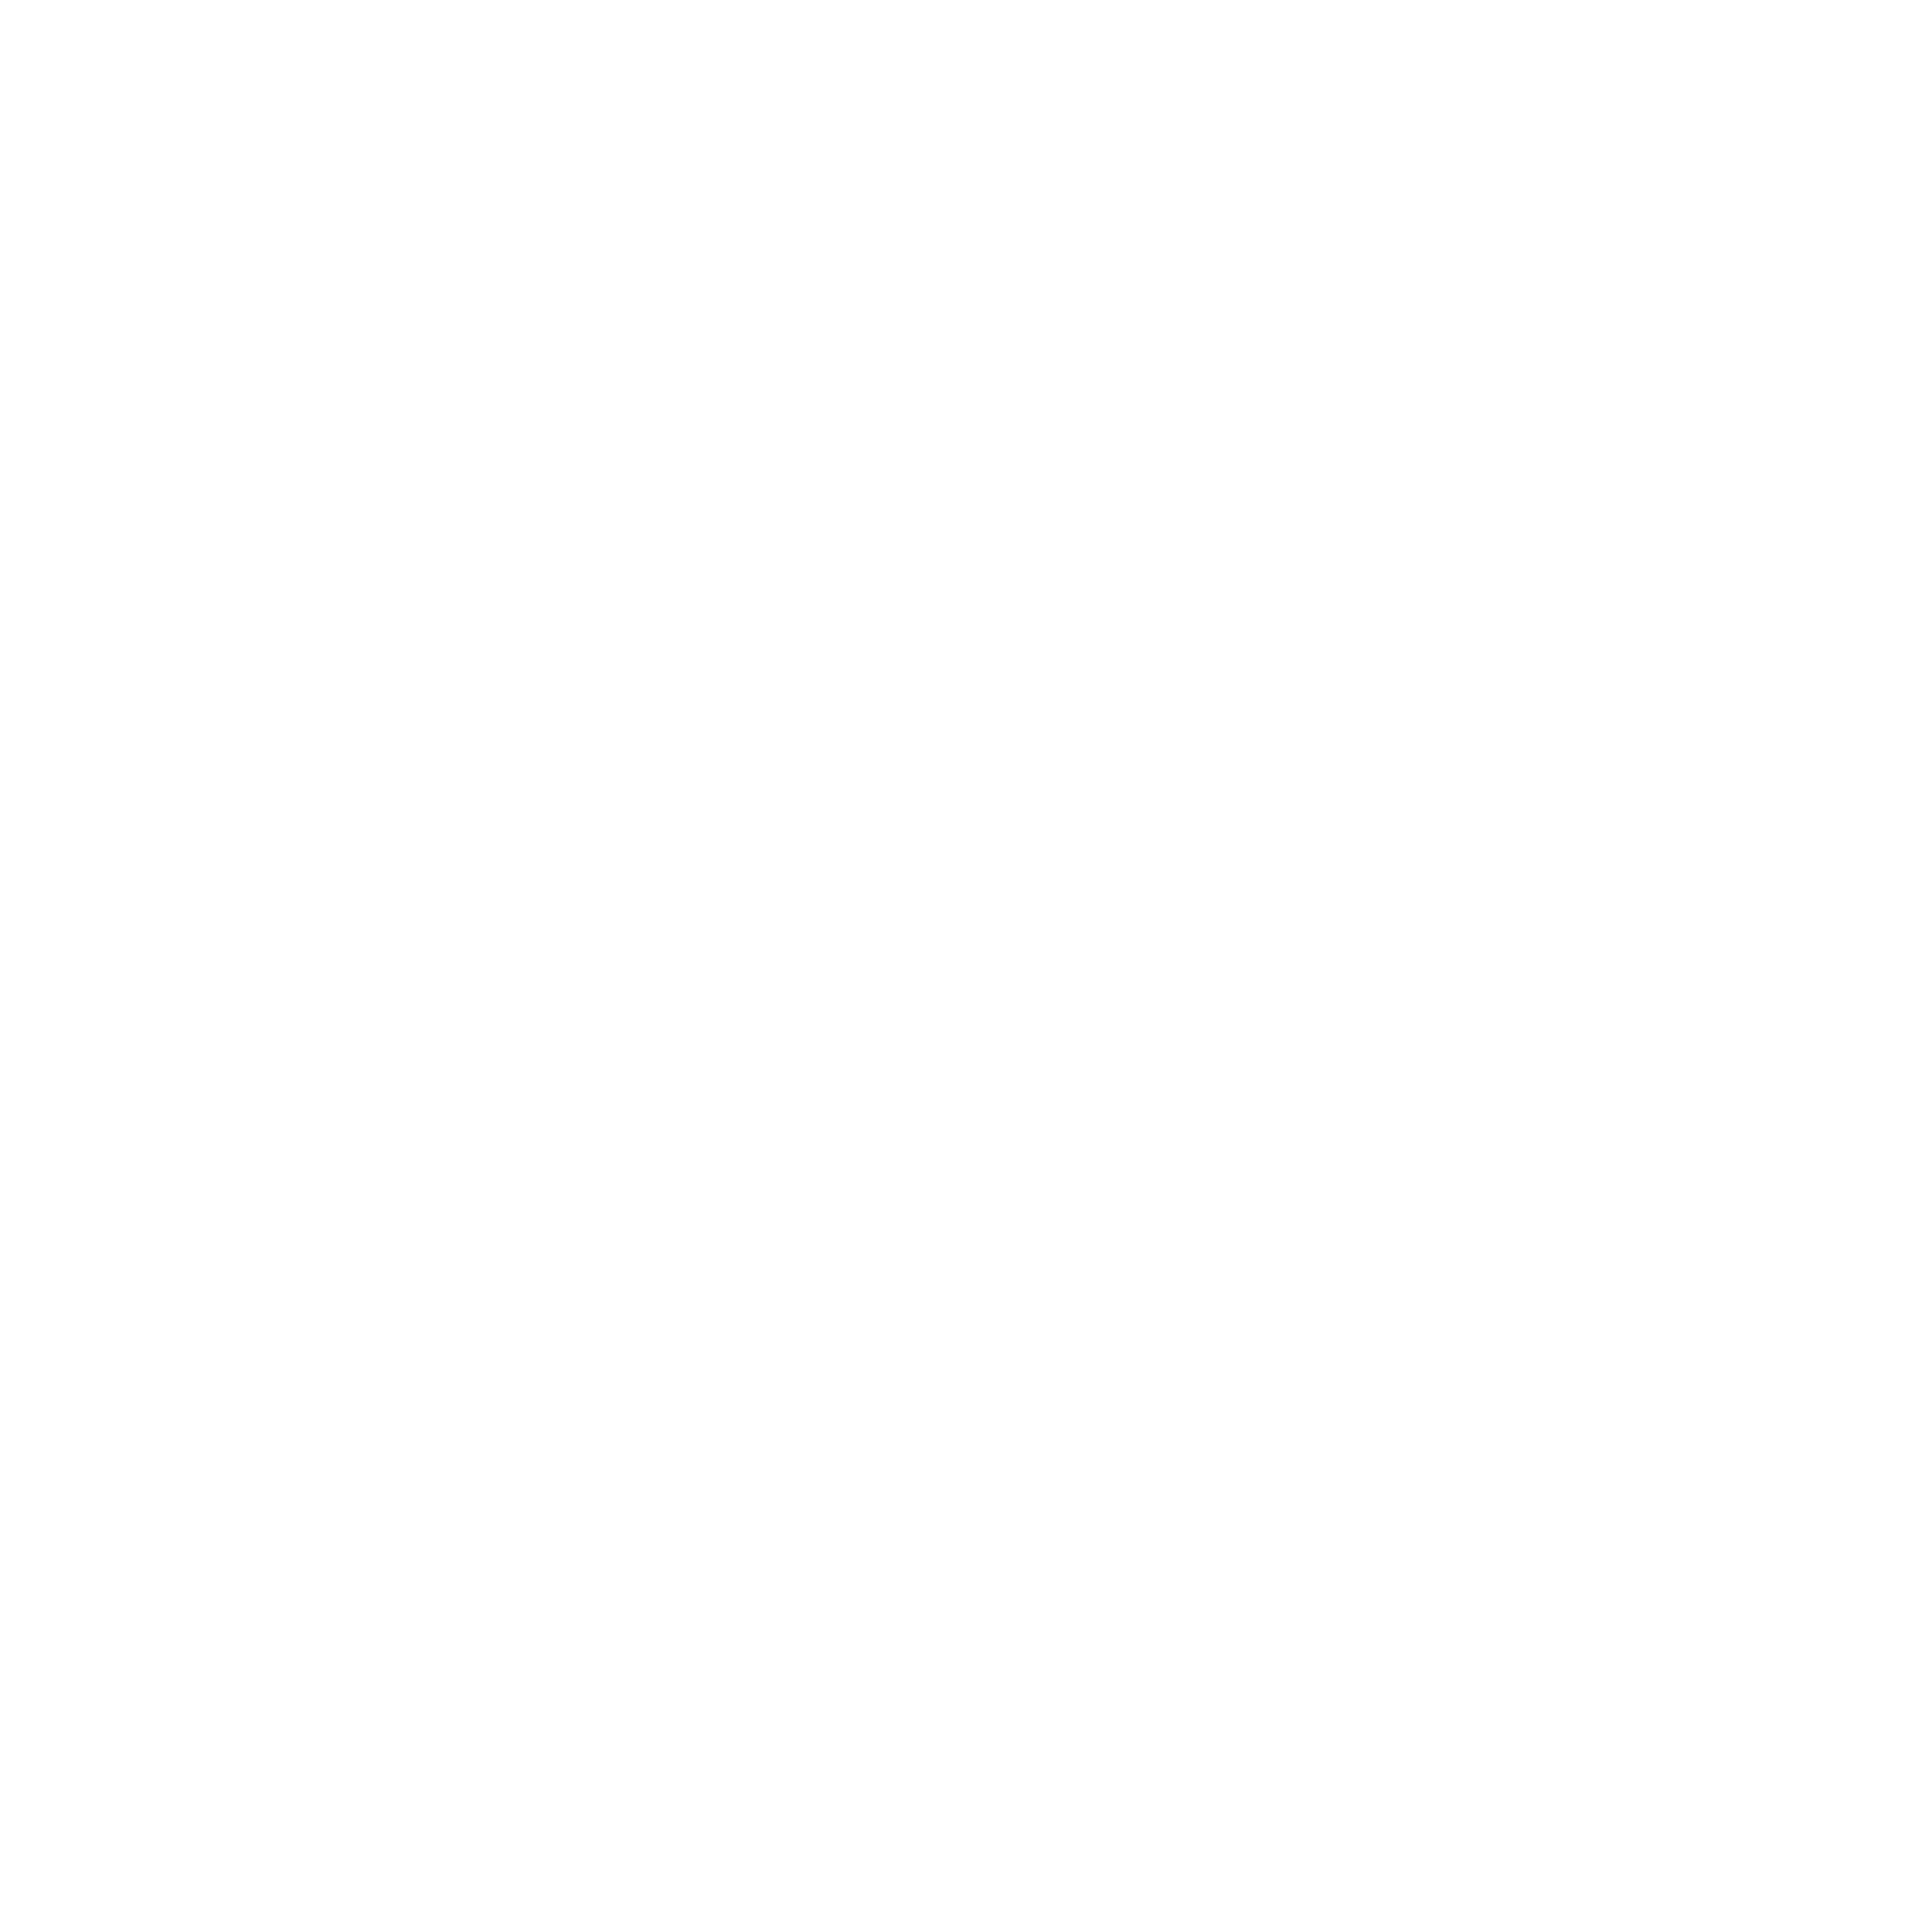 adsync.llc